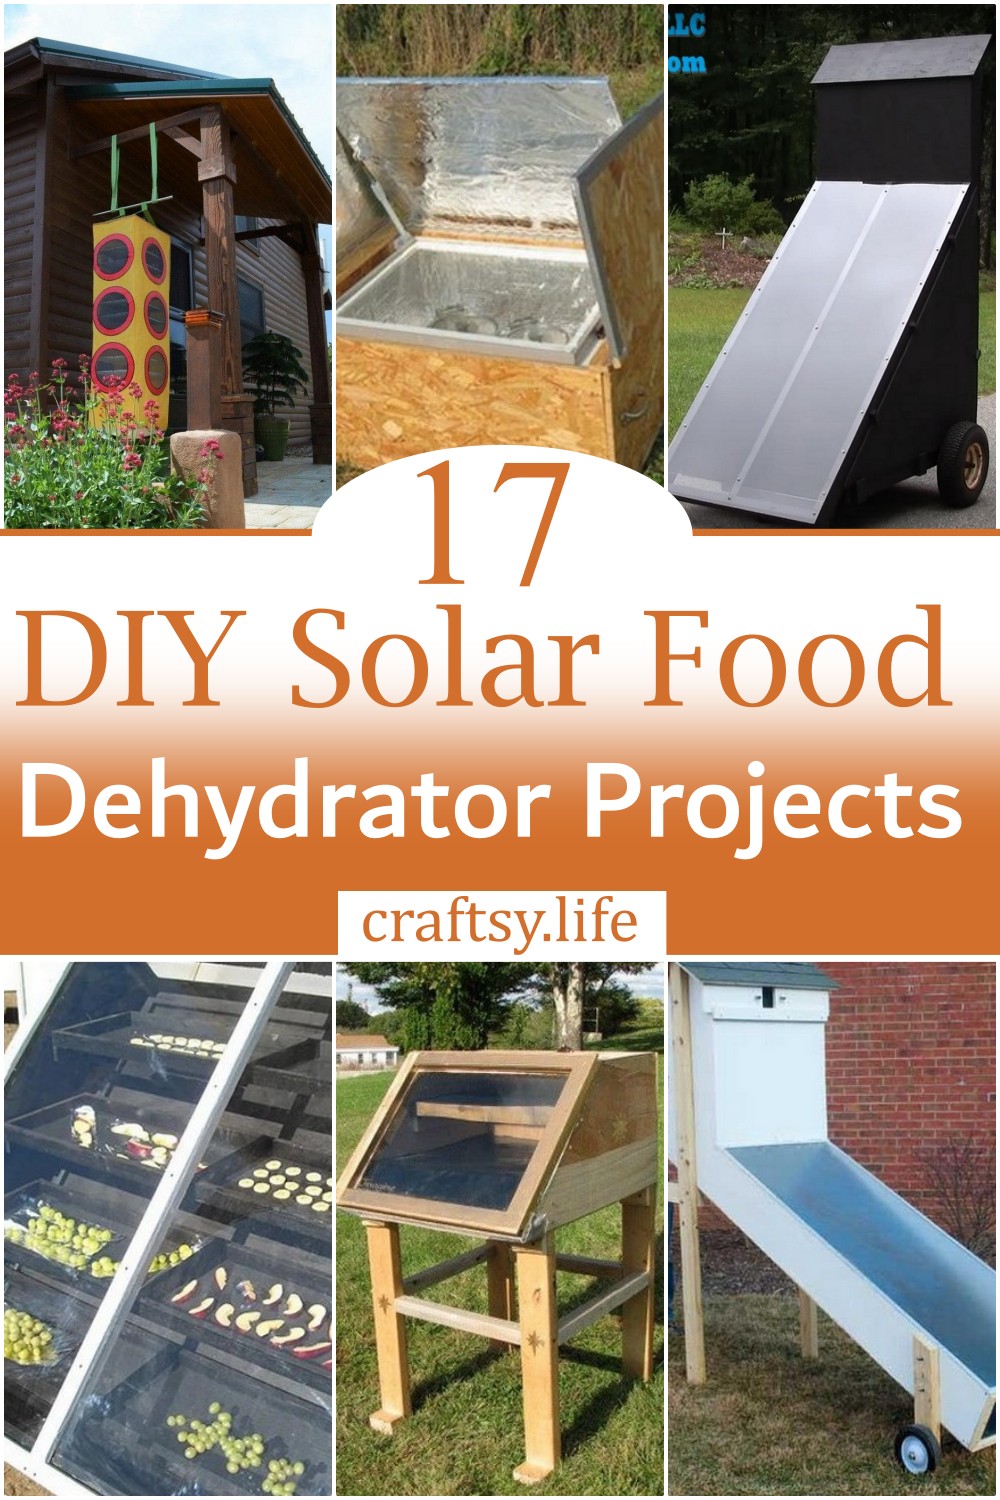 DIY Solar Food Dehydrator Projects